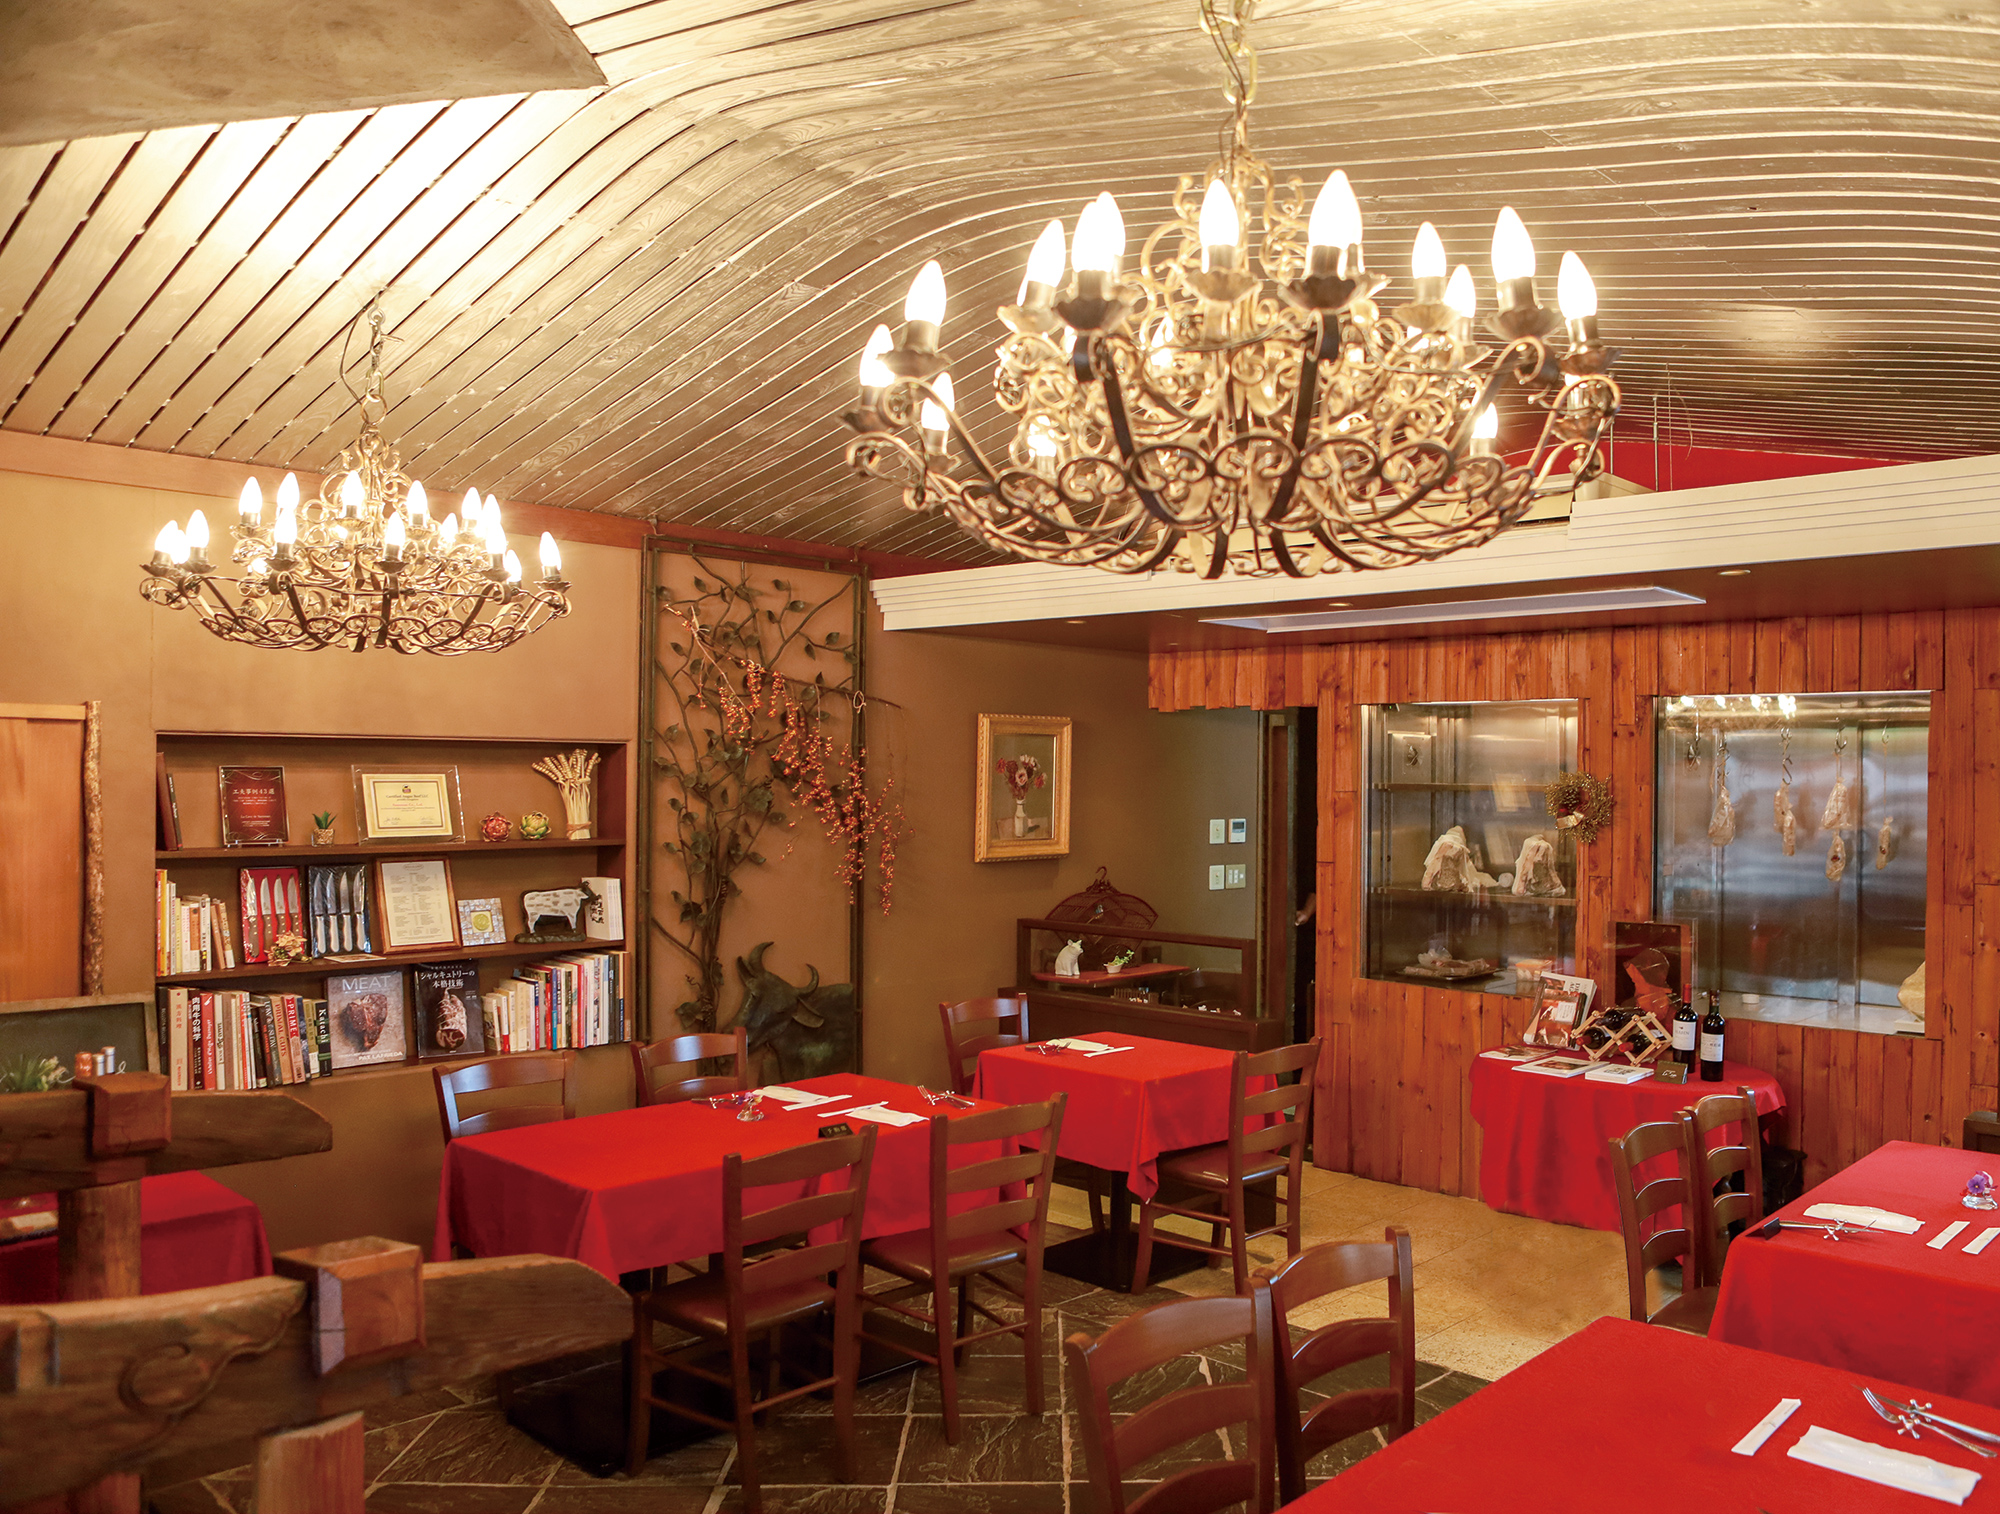 ラ カーブ ド サノマン 店内は、大きなシャンデリアが印象的。赤を基調としたアンティークな雰囲気が漂います。